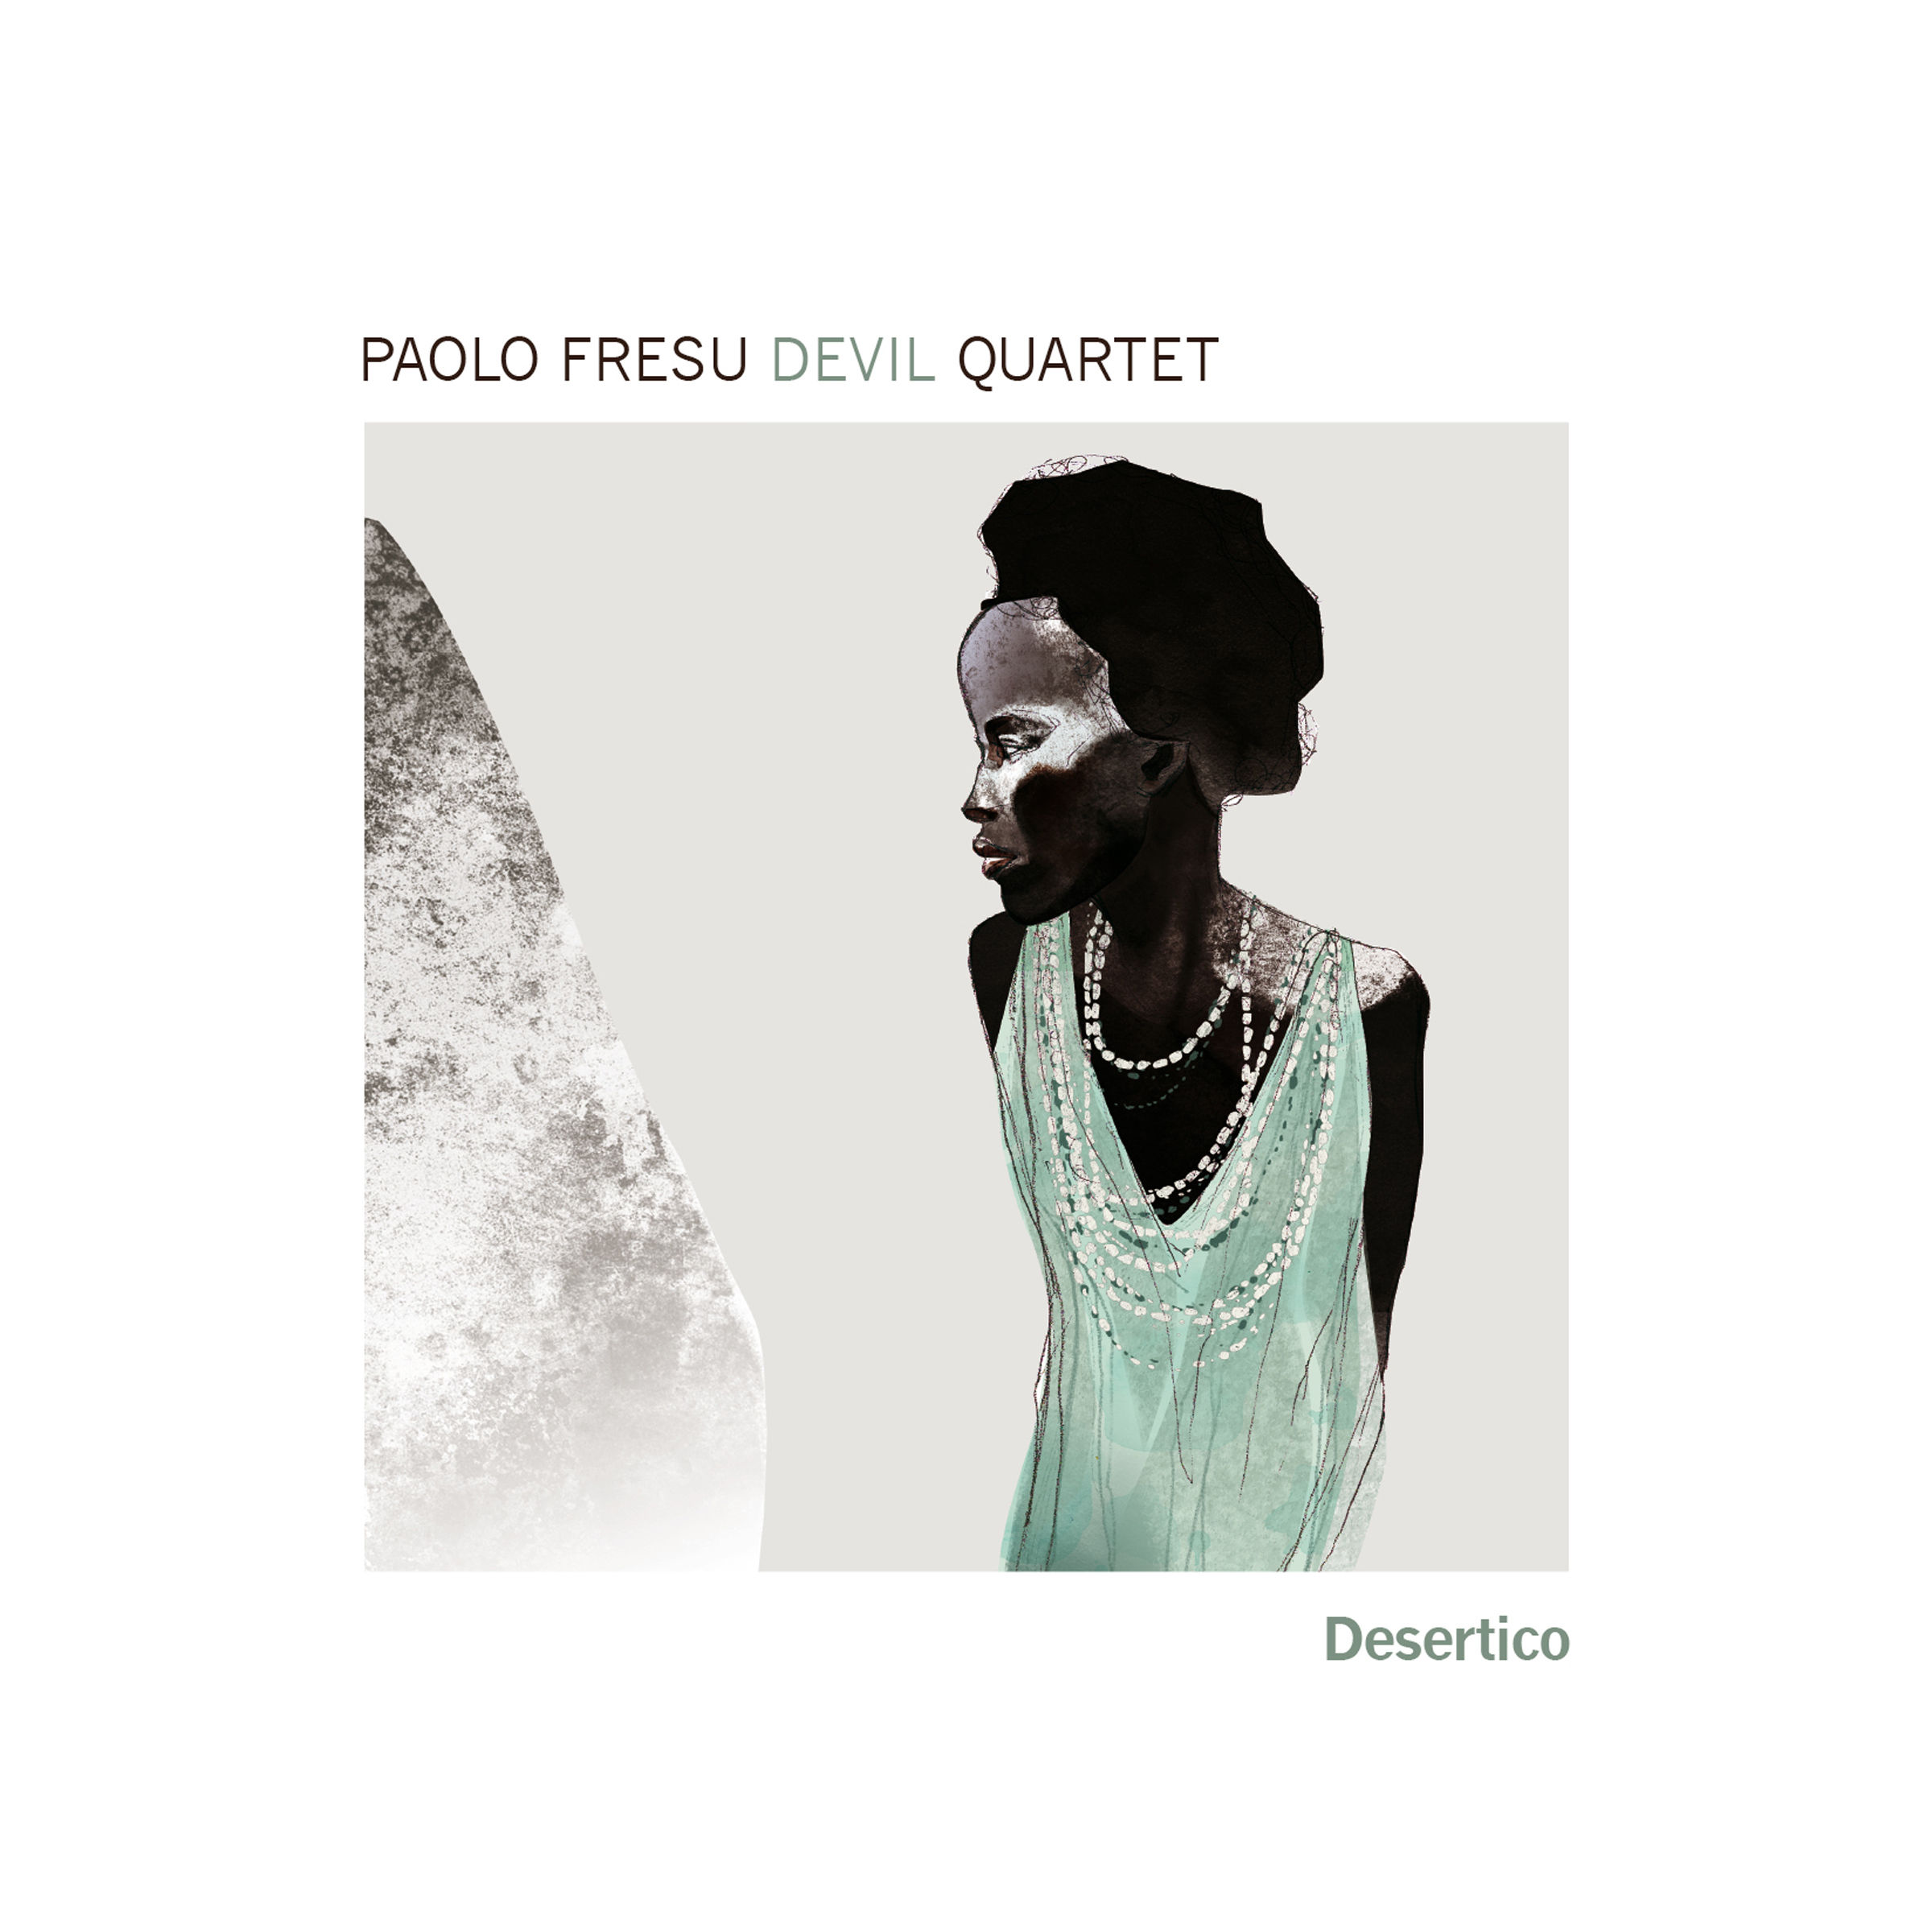 Paolo Fresu Devil Quartet – Desertico (2013/2017) [Qobuz FLAC 24bit/88,2kHz]